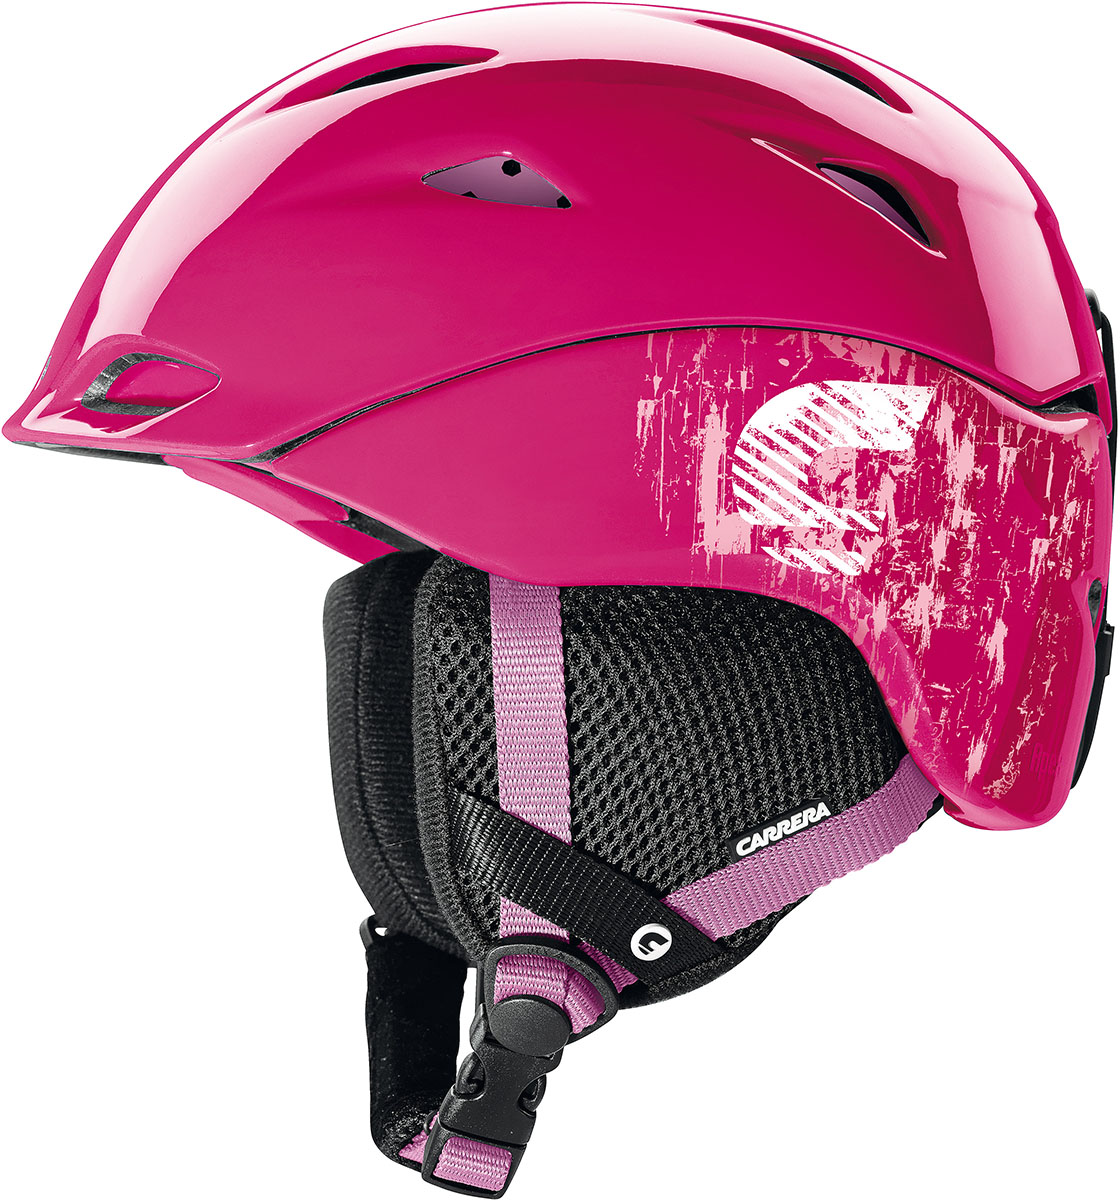 Women's ski helmet